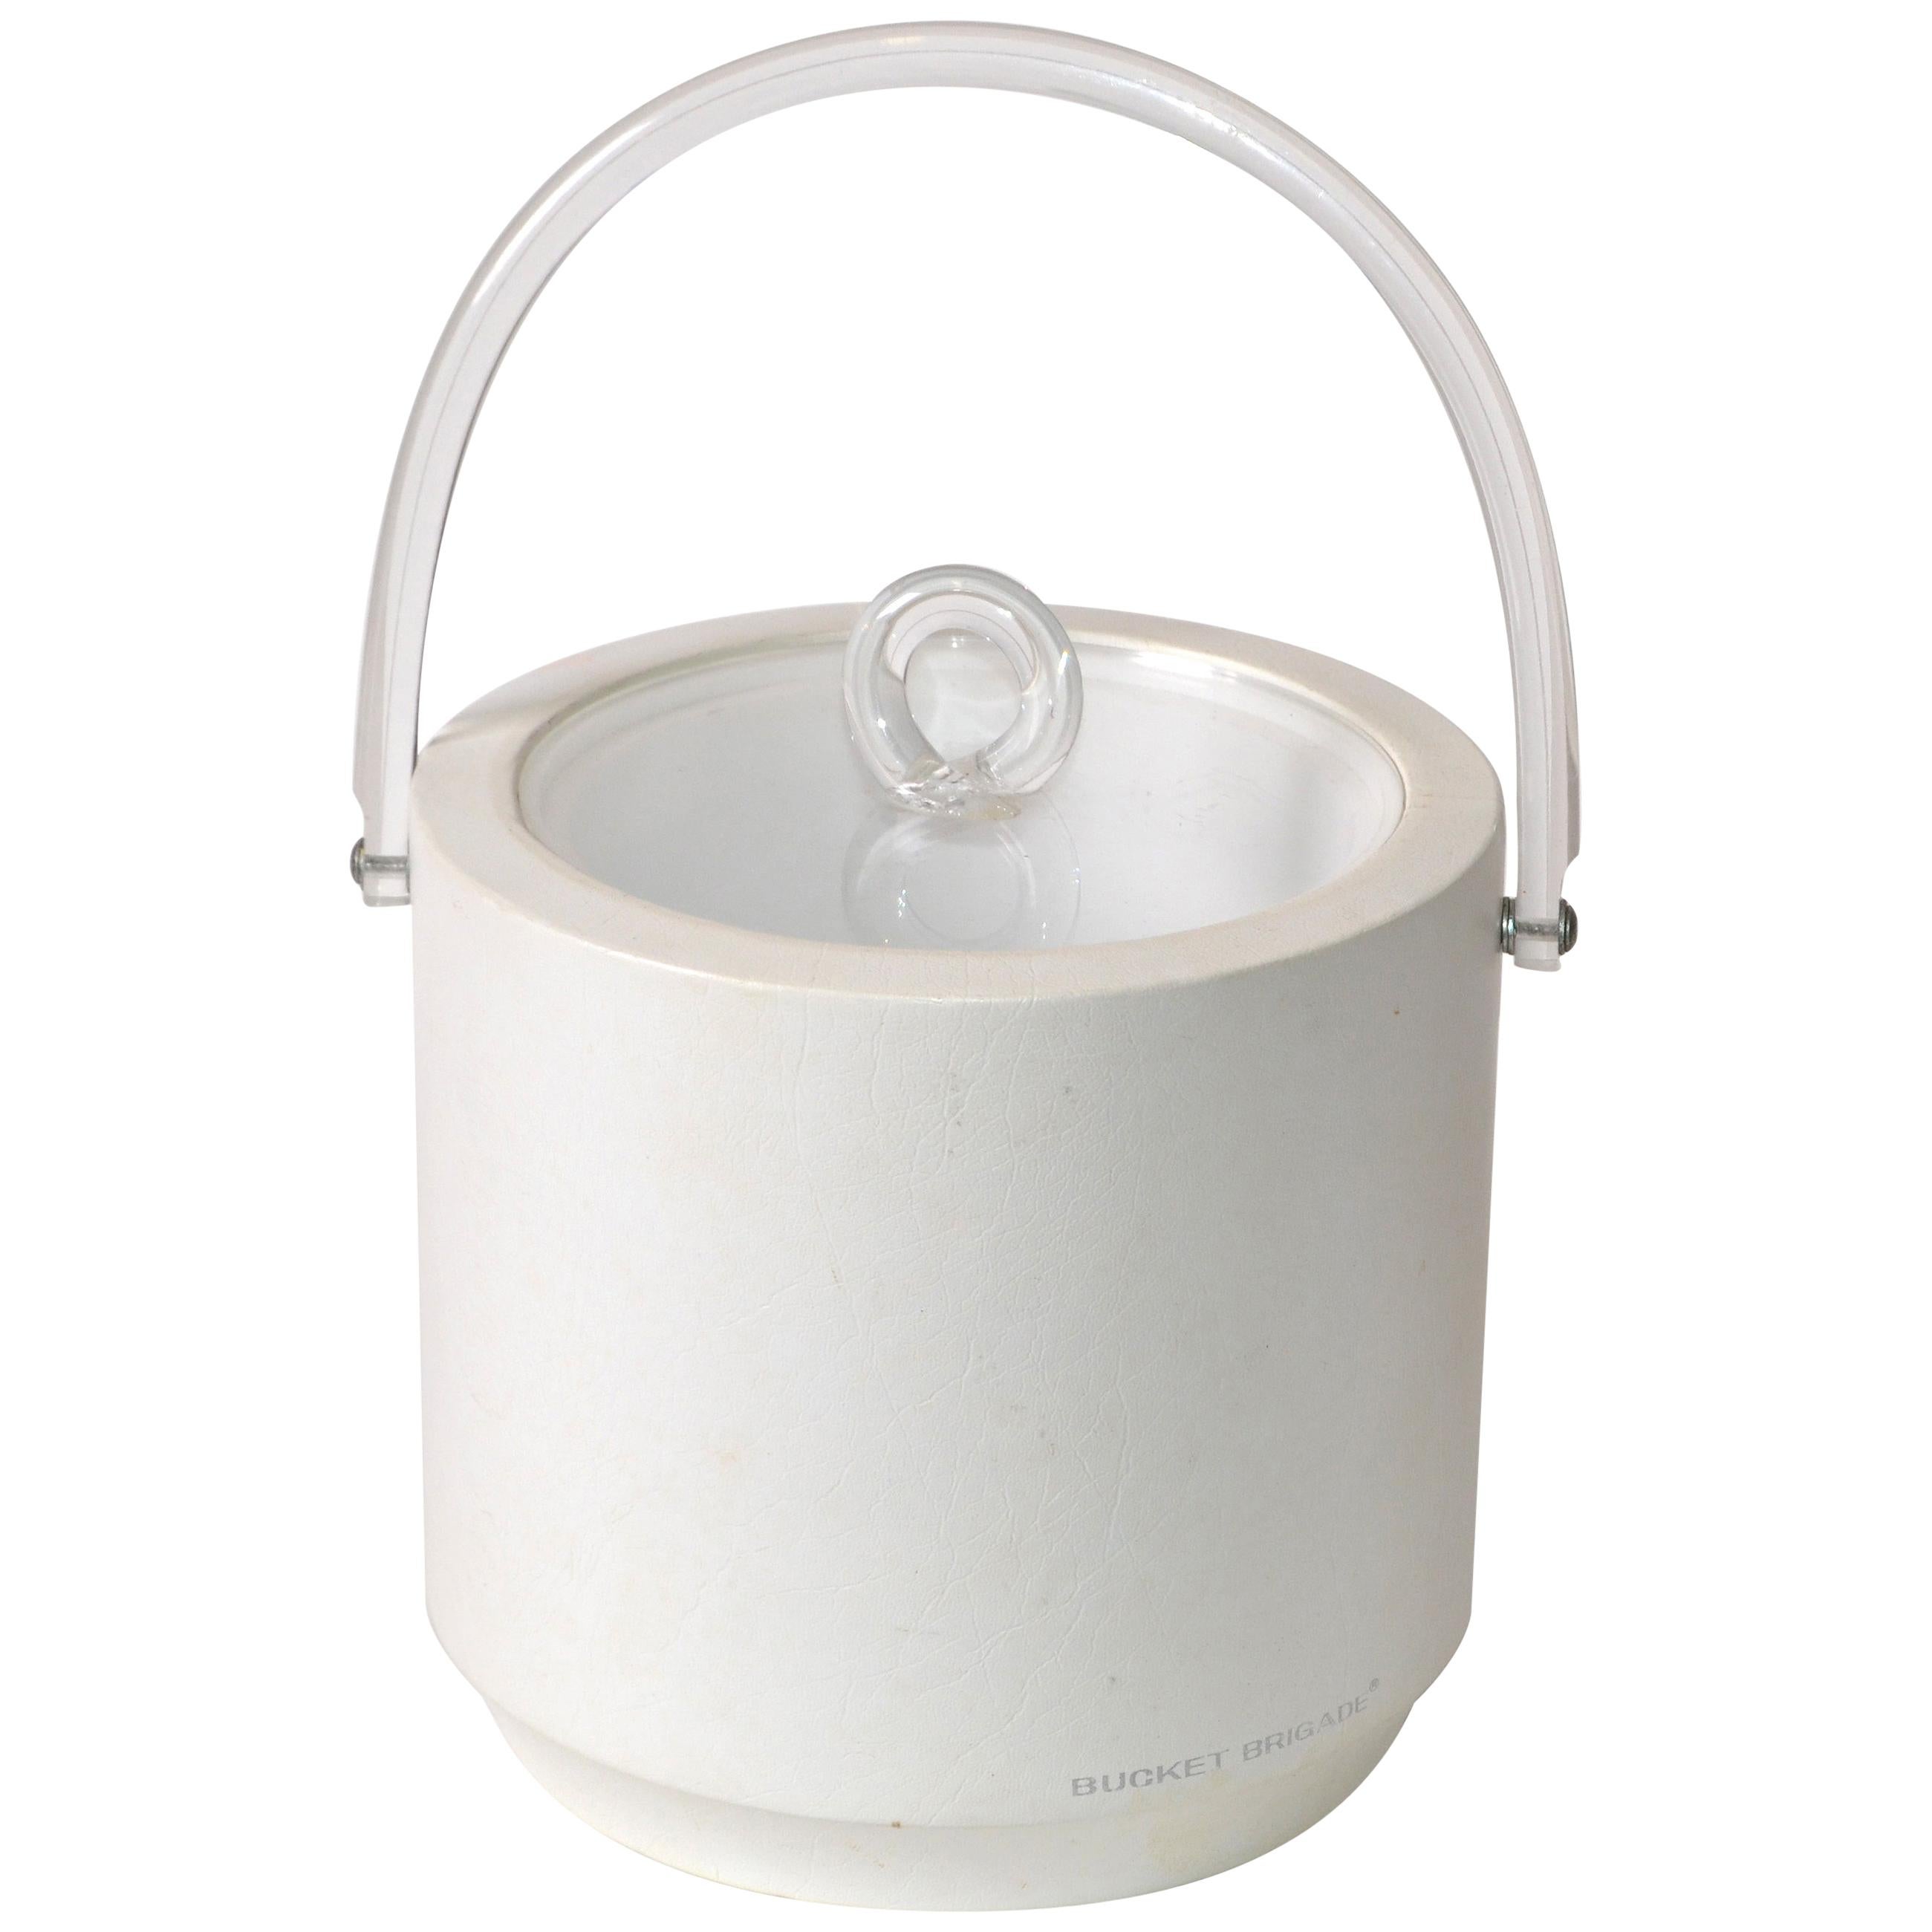 Bucket Brigade 1970 Seau à glace à couvercle en cuir blanc et lucite Mid-Century Modern